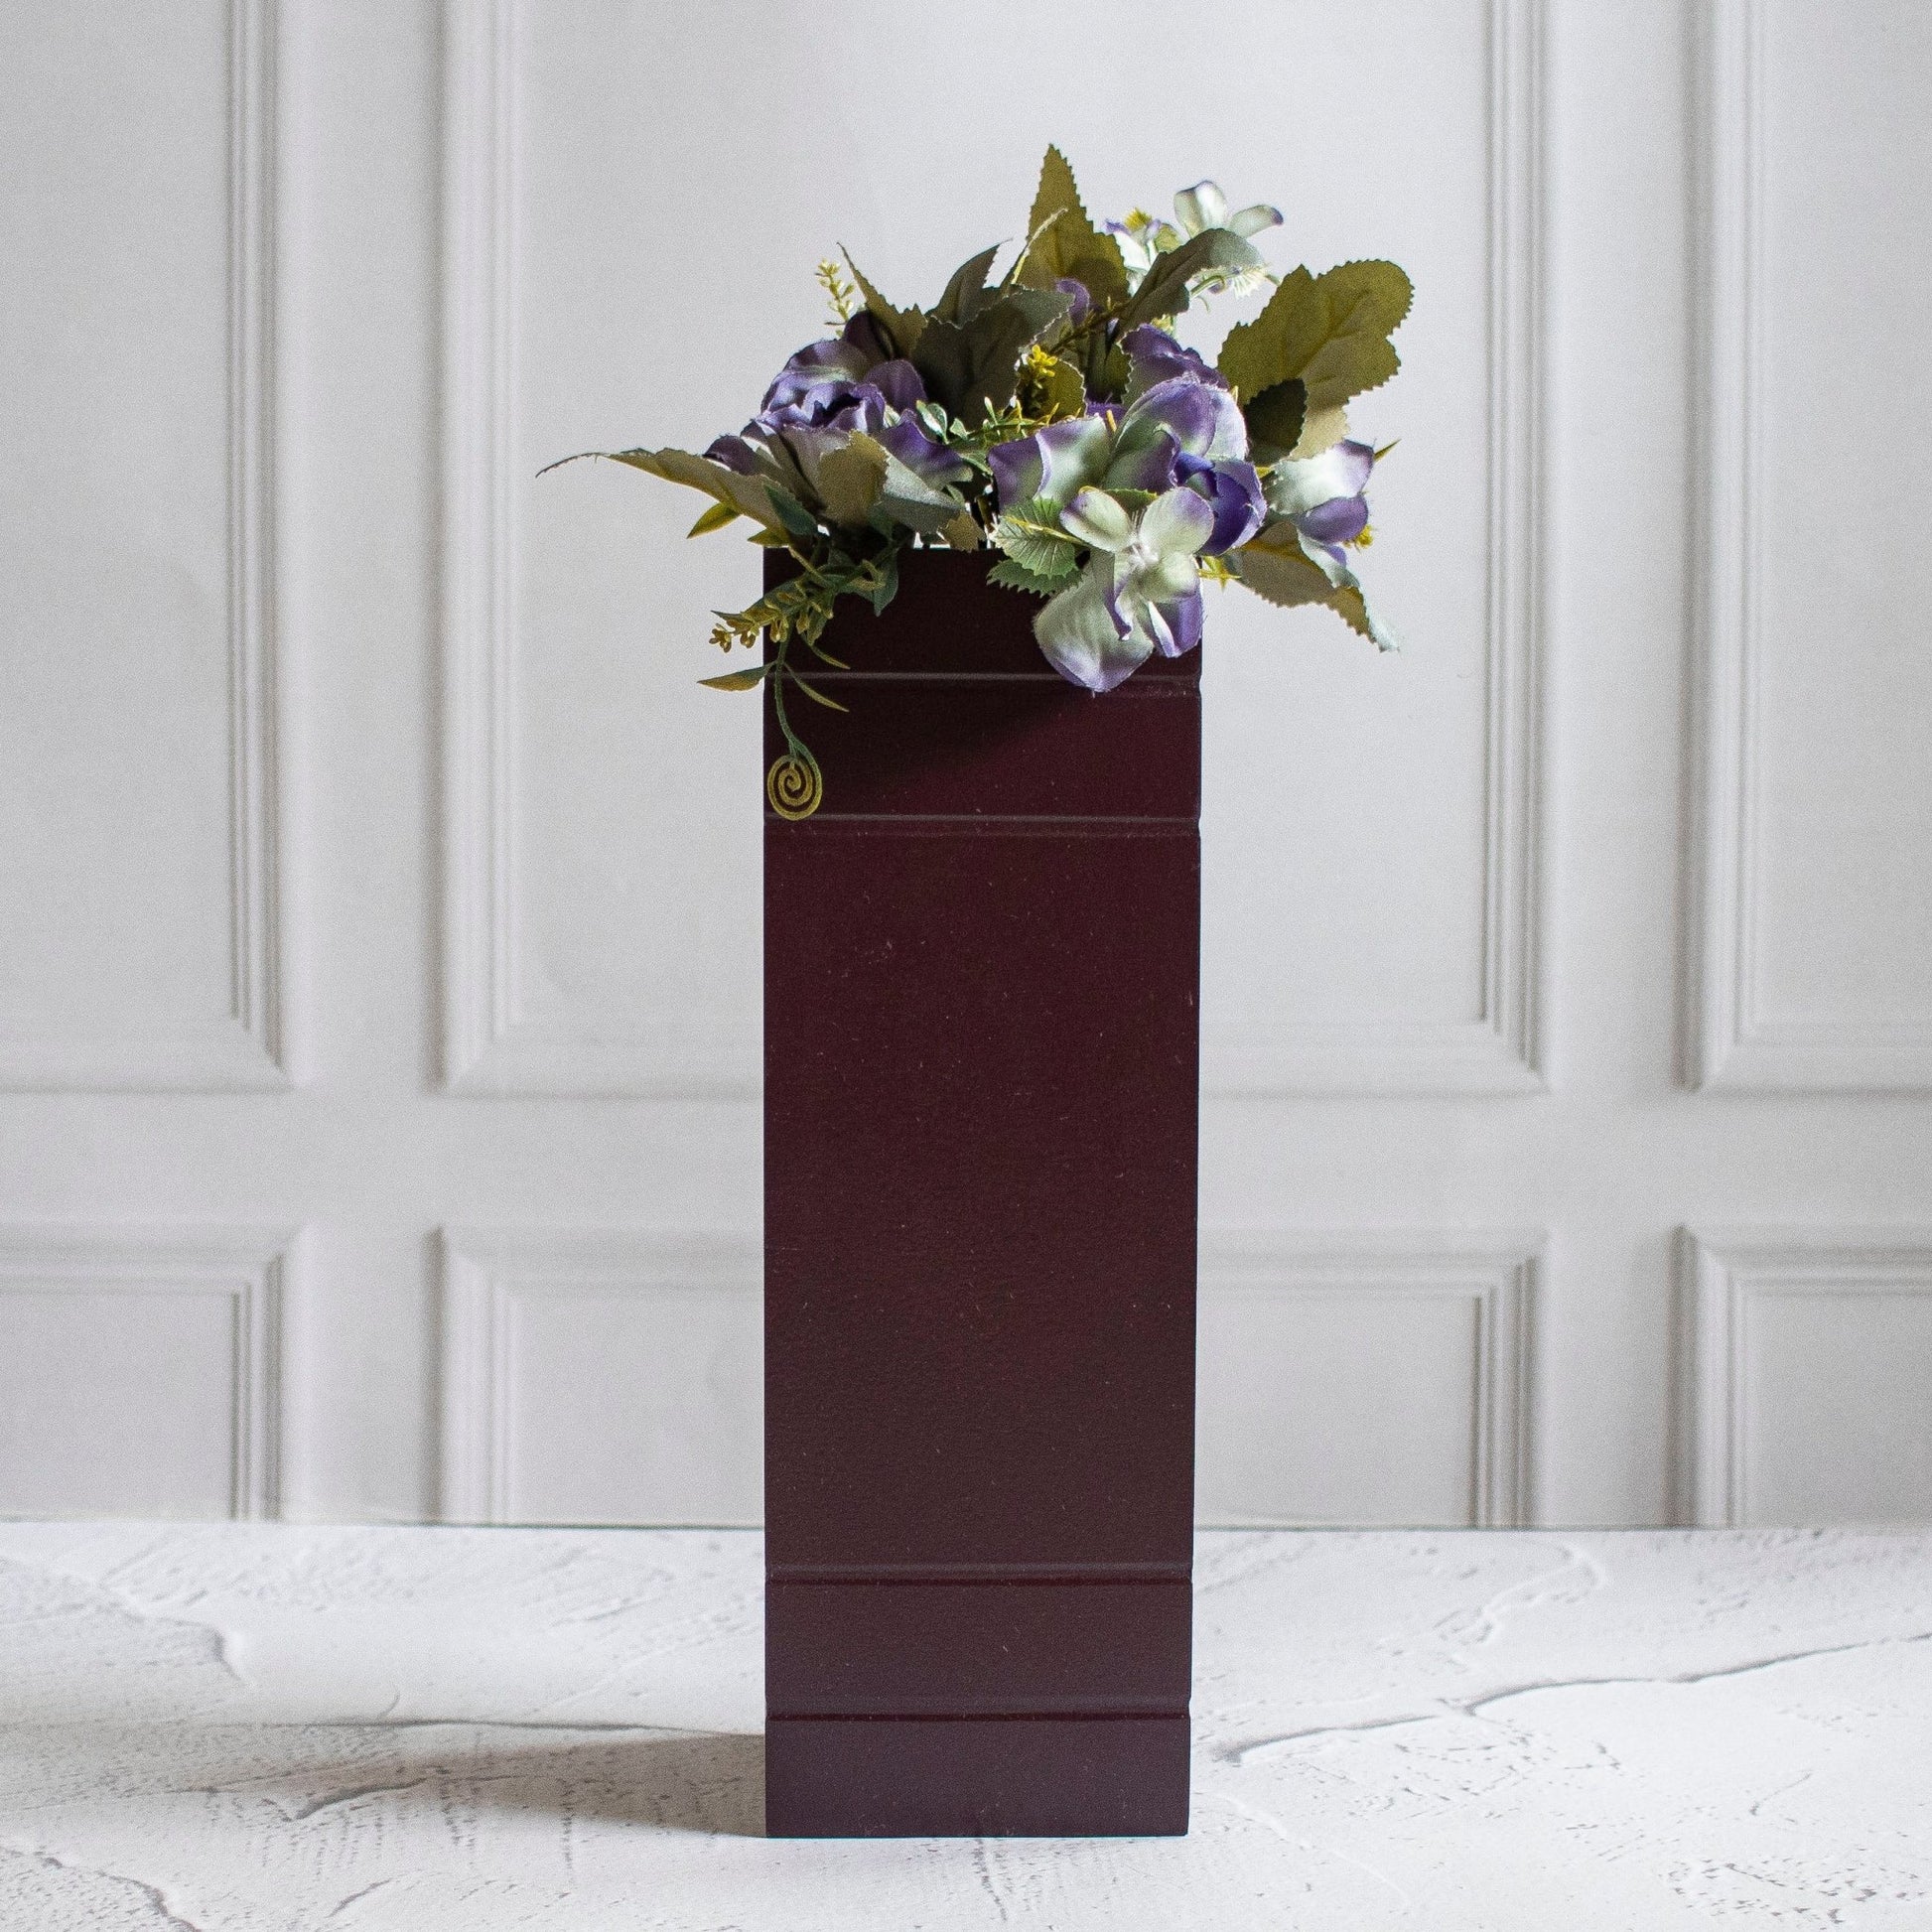 Cuboidal Flower Vase - Ebony WoodcraftsVases